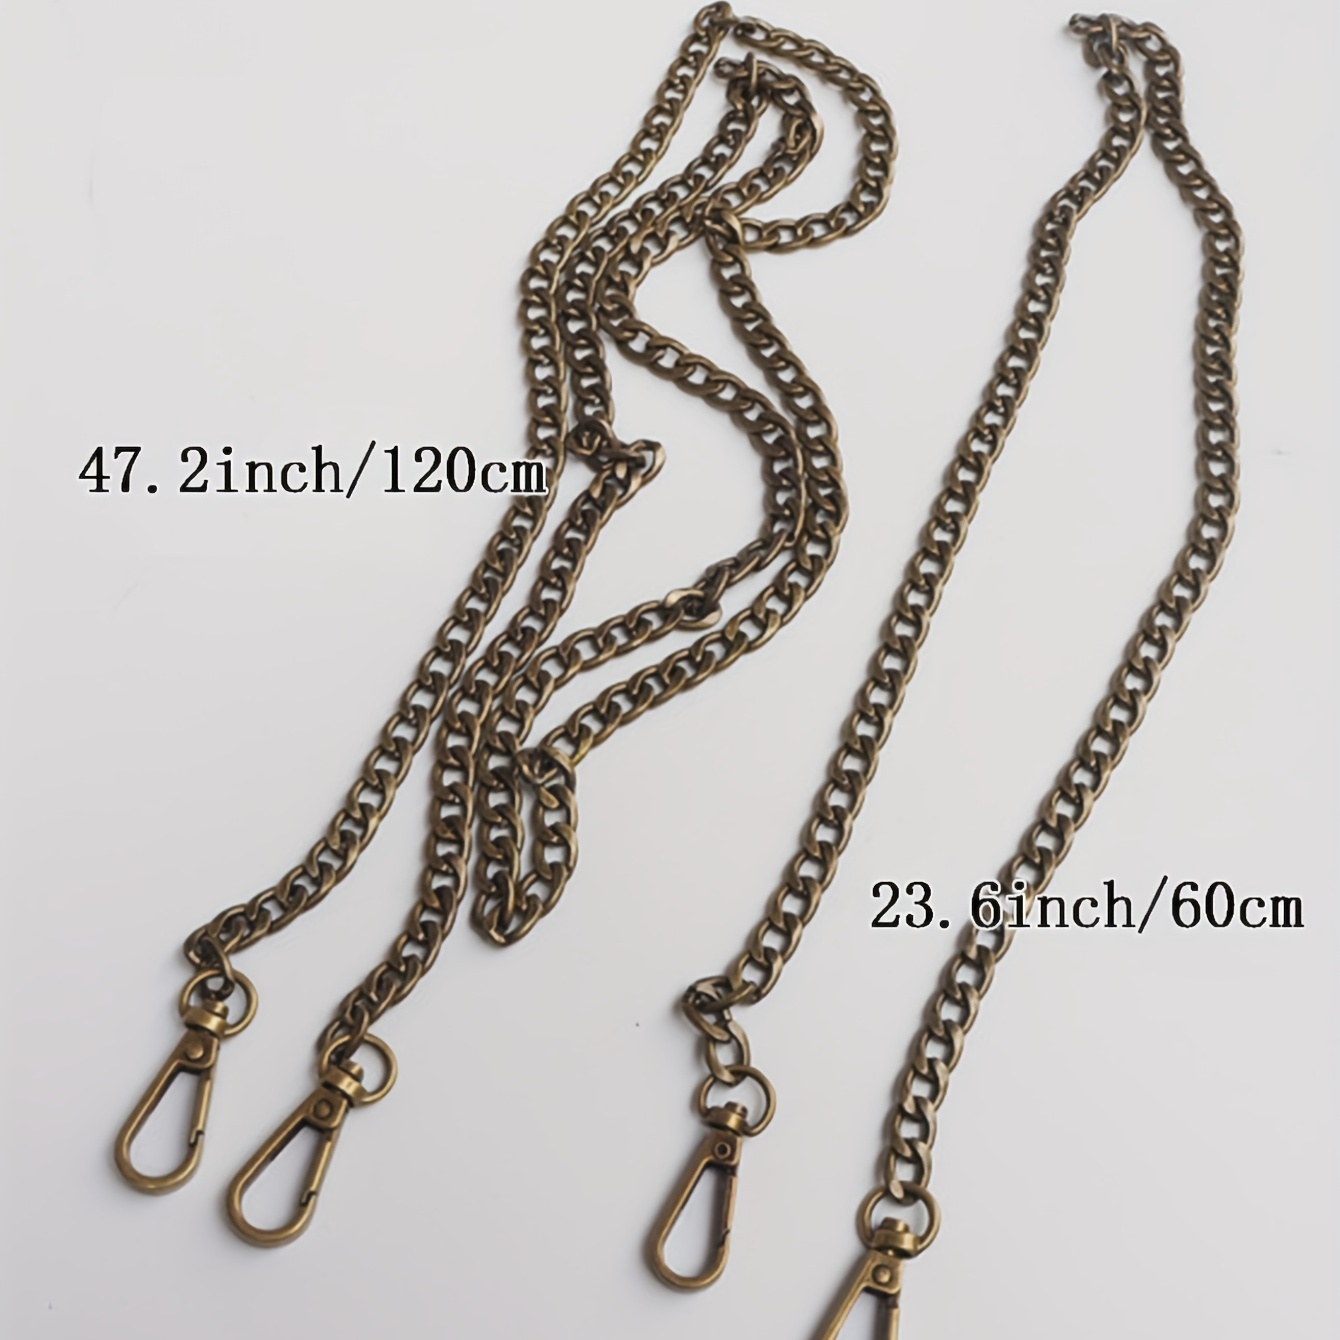 Bagssmartversatile Metal Bag Chain Strap - 60cm-120cm Ancient